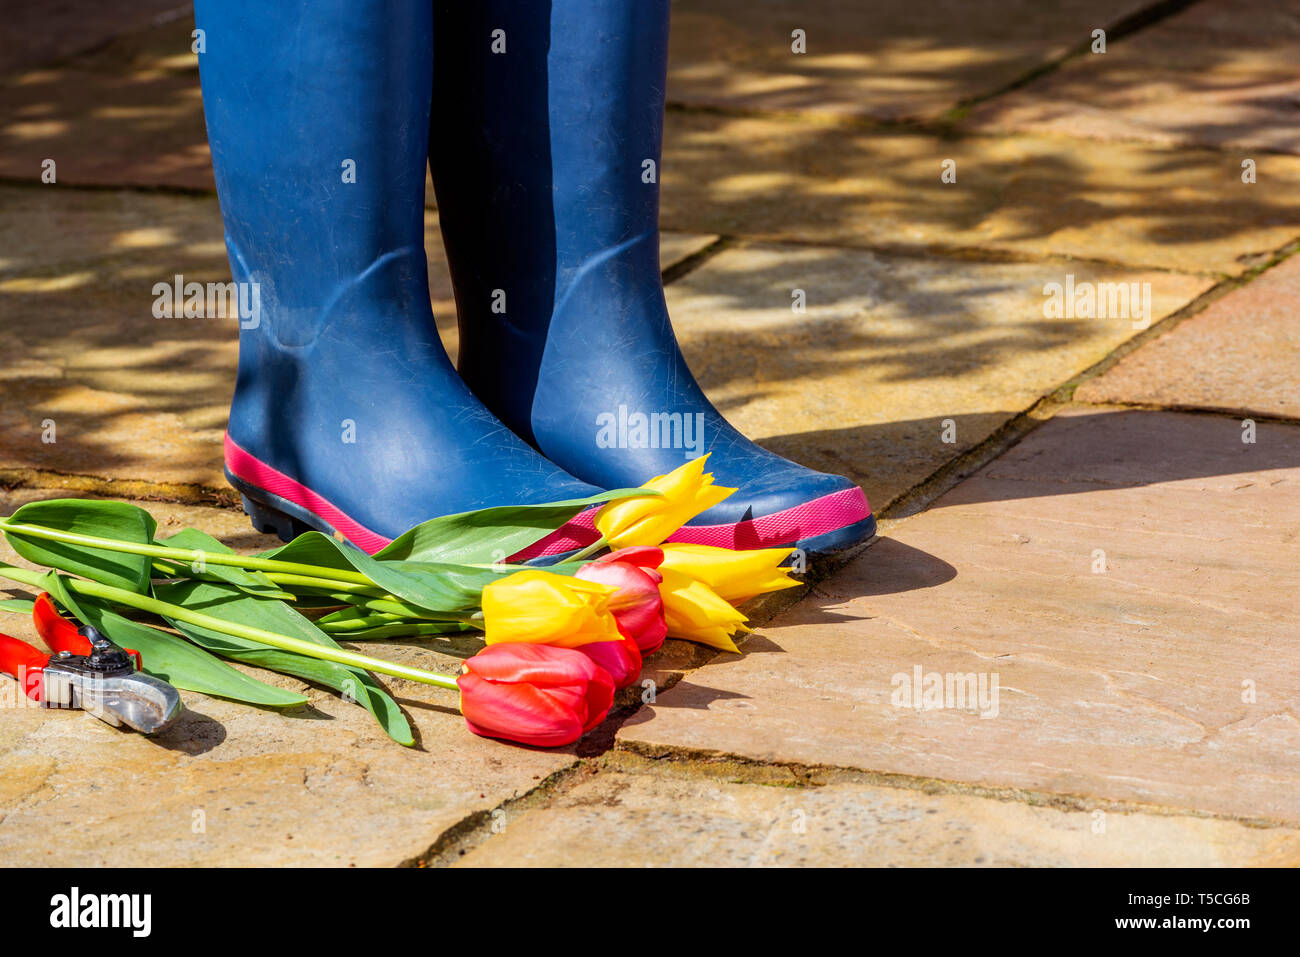 Paar blaue Gummistiefel auf einem Stein Terrasse. Meine Damen regen  Stiefel. Frühling Blumen und Blüten, geschnitten, gelbe und rote Tulpen,  mit der Gartenschere Stockfotografie - Alamy